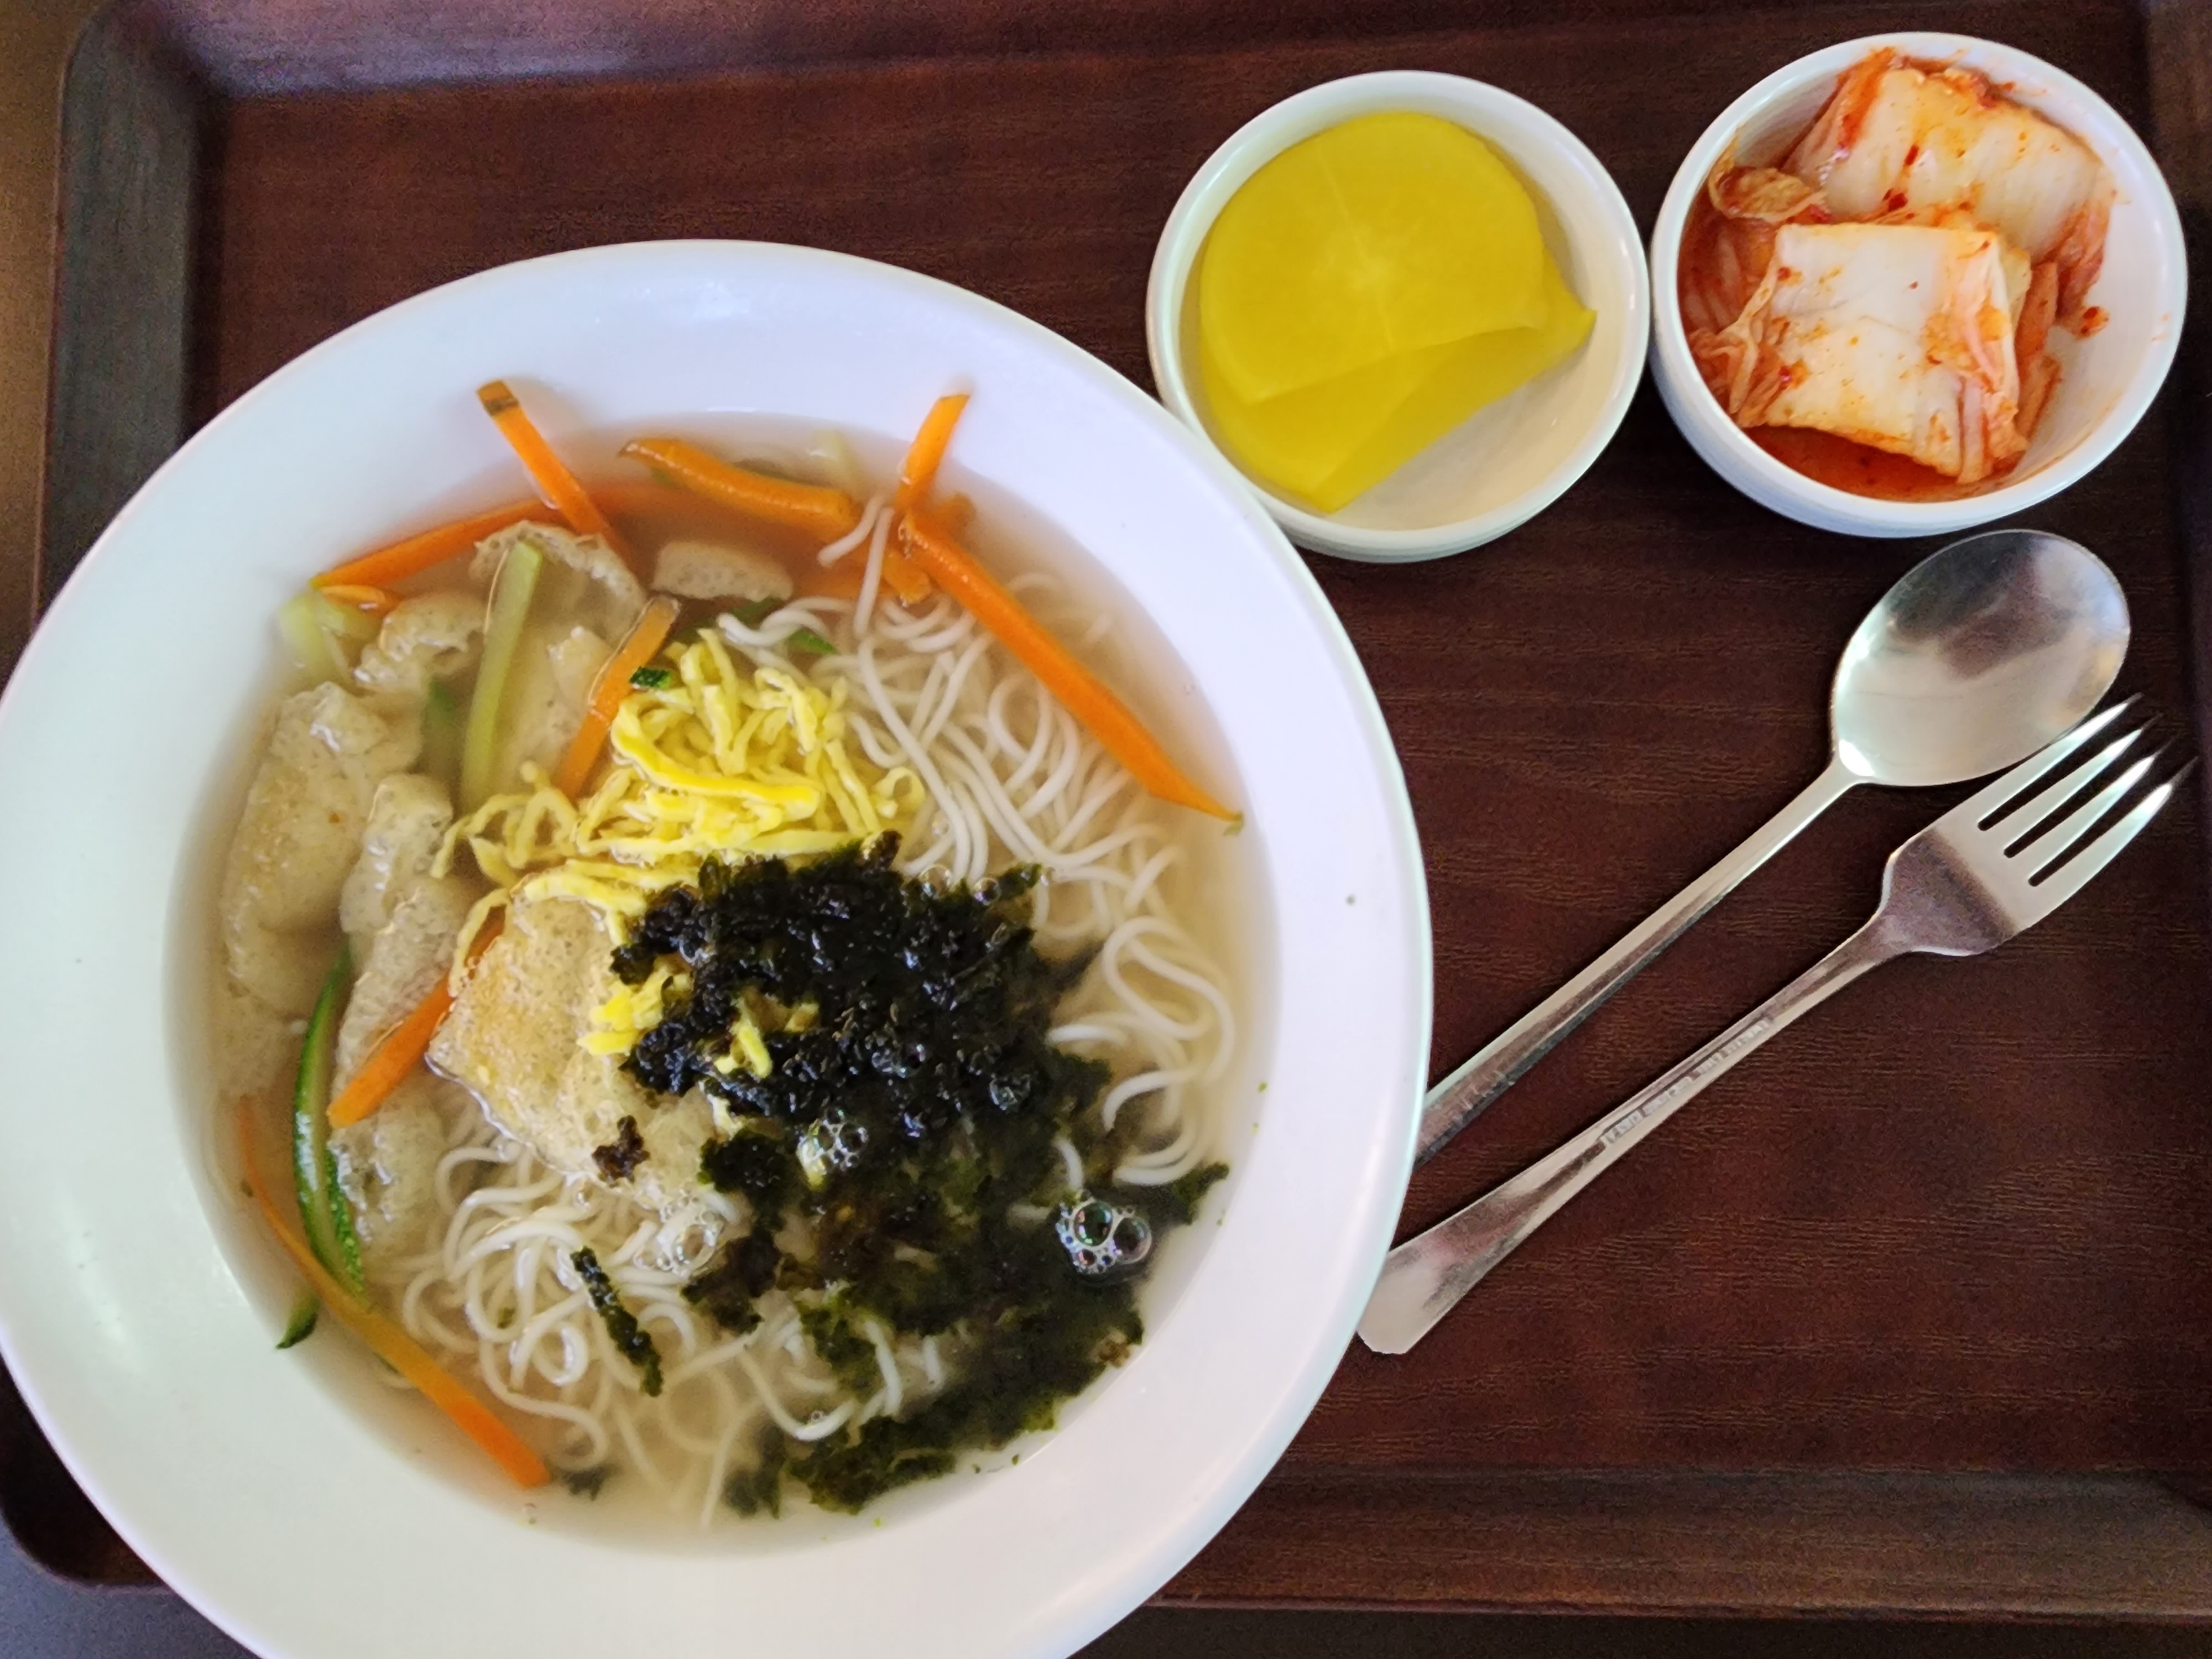 인천공항 푸드코트 아워홈 맛집 식당